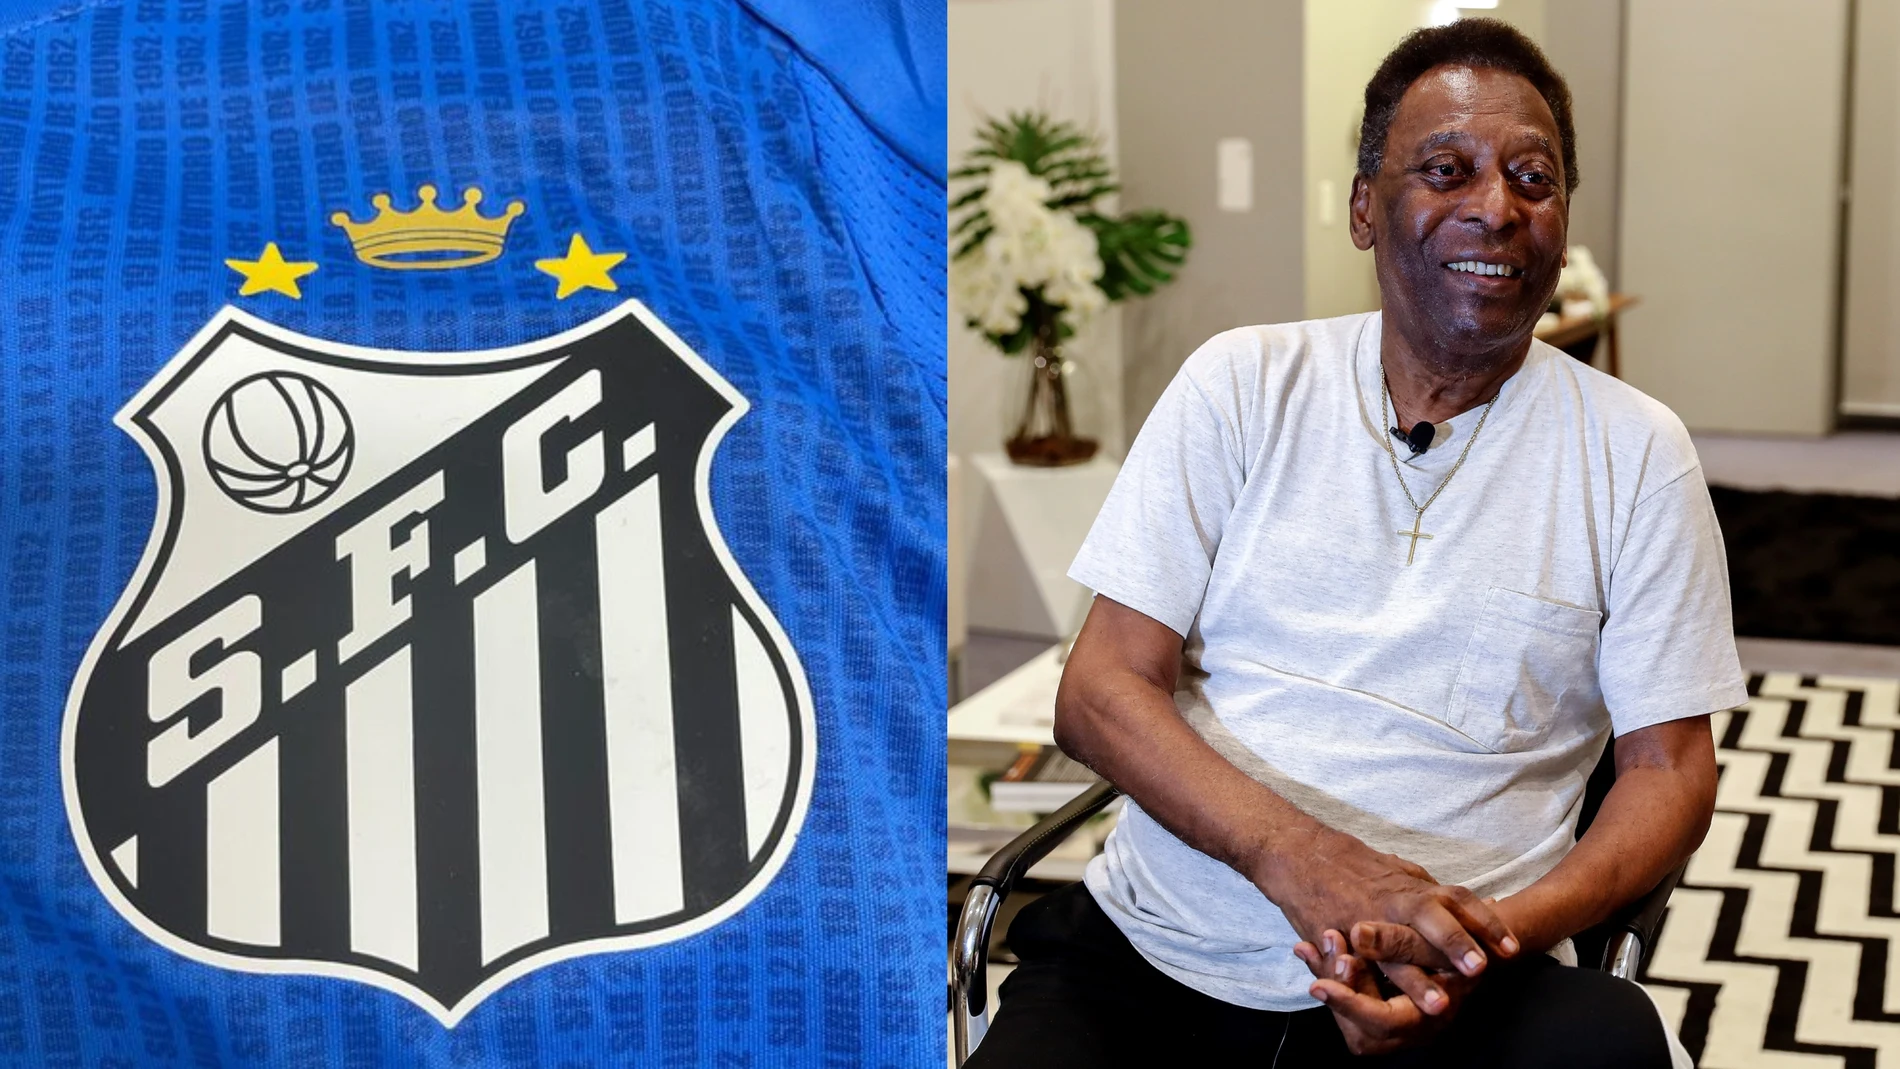 Nuevo escudo del Santos en homenaje a Pelé